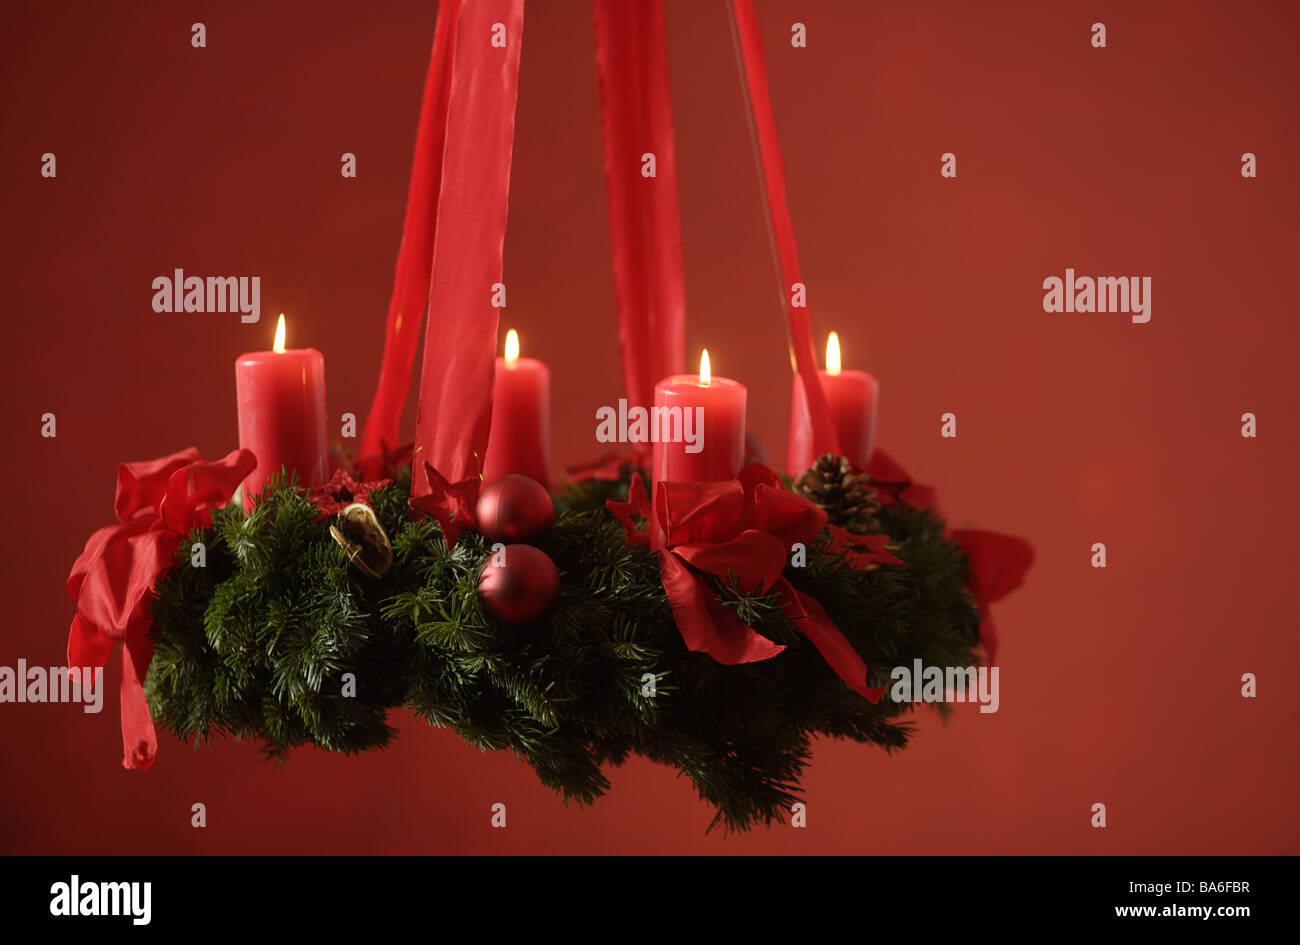 Adventskranz hängt Kerzen vier Serien stechen Weihnachtstradition rot vor Weihnachten Advent Weihnachten-ähnliche Stimmung Schweigen Stille Stockfoto